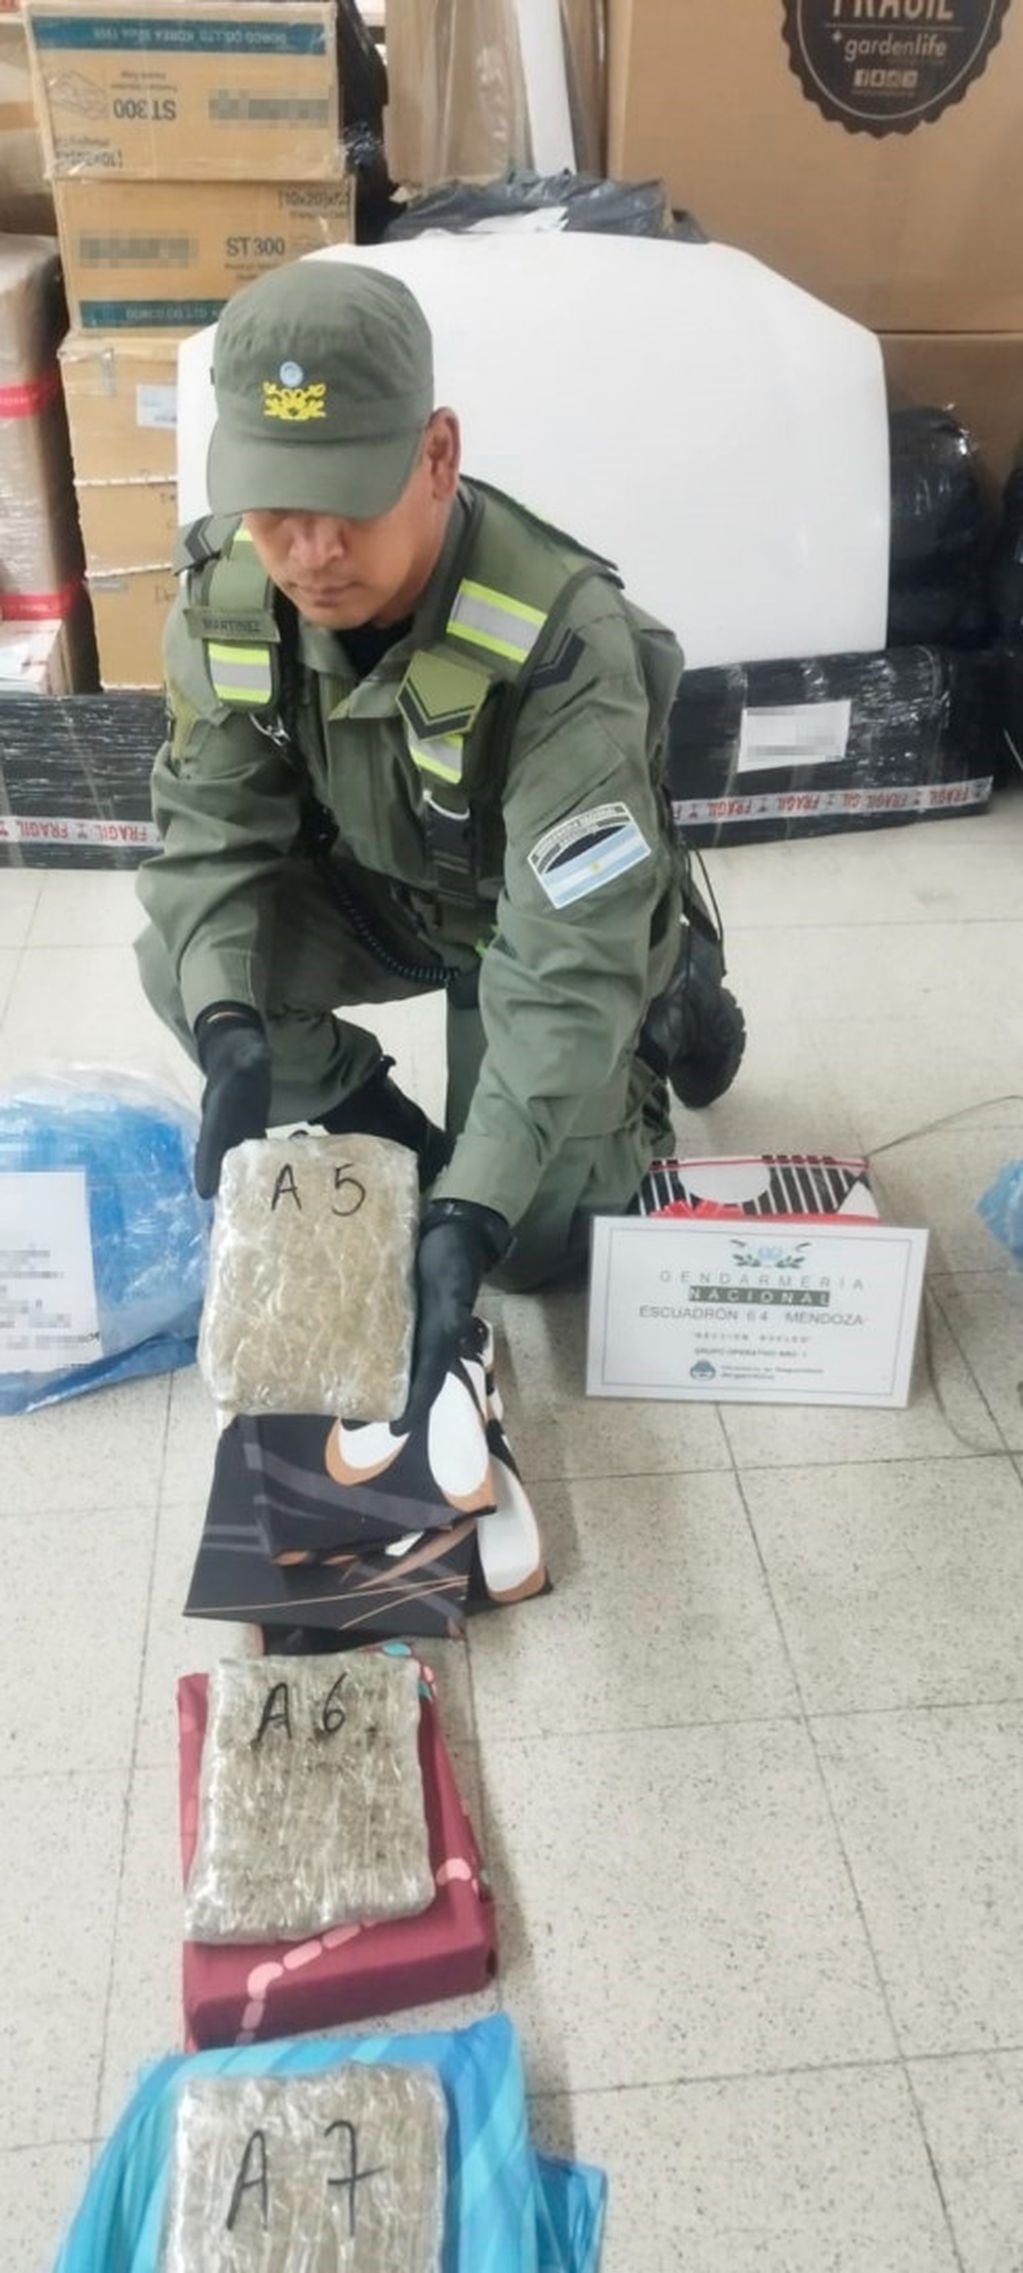 La marihuana fue detectada por los gendarmes durante un control en una empresa de trasporte. | Foto: Prensa Gendarmería Nacional